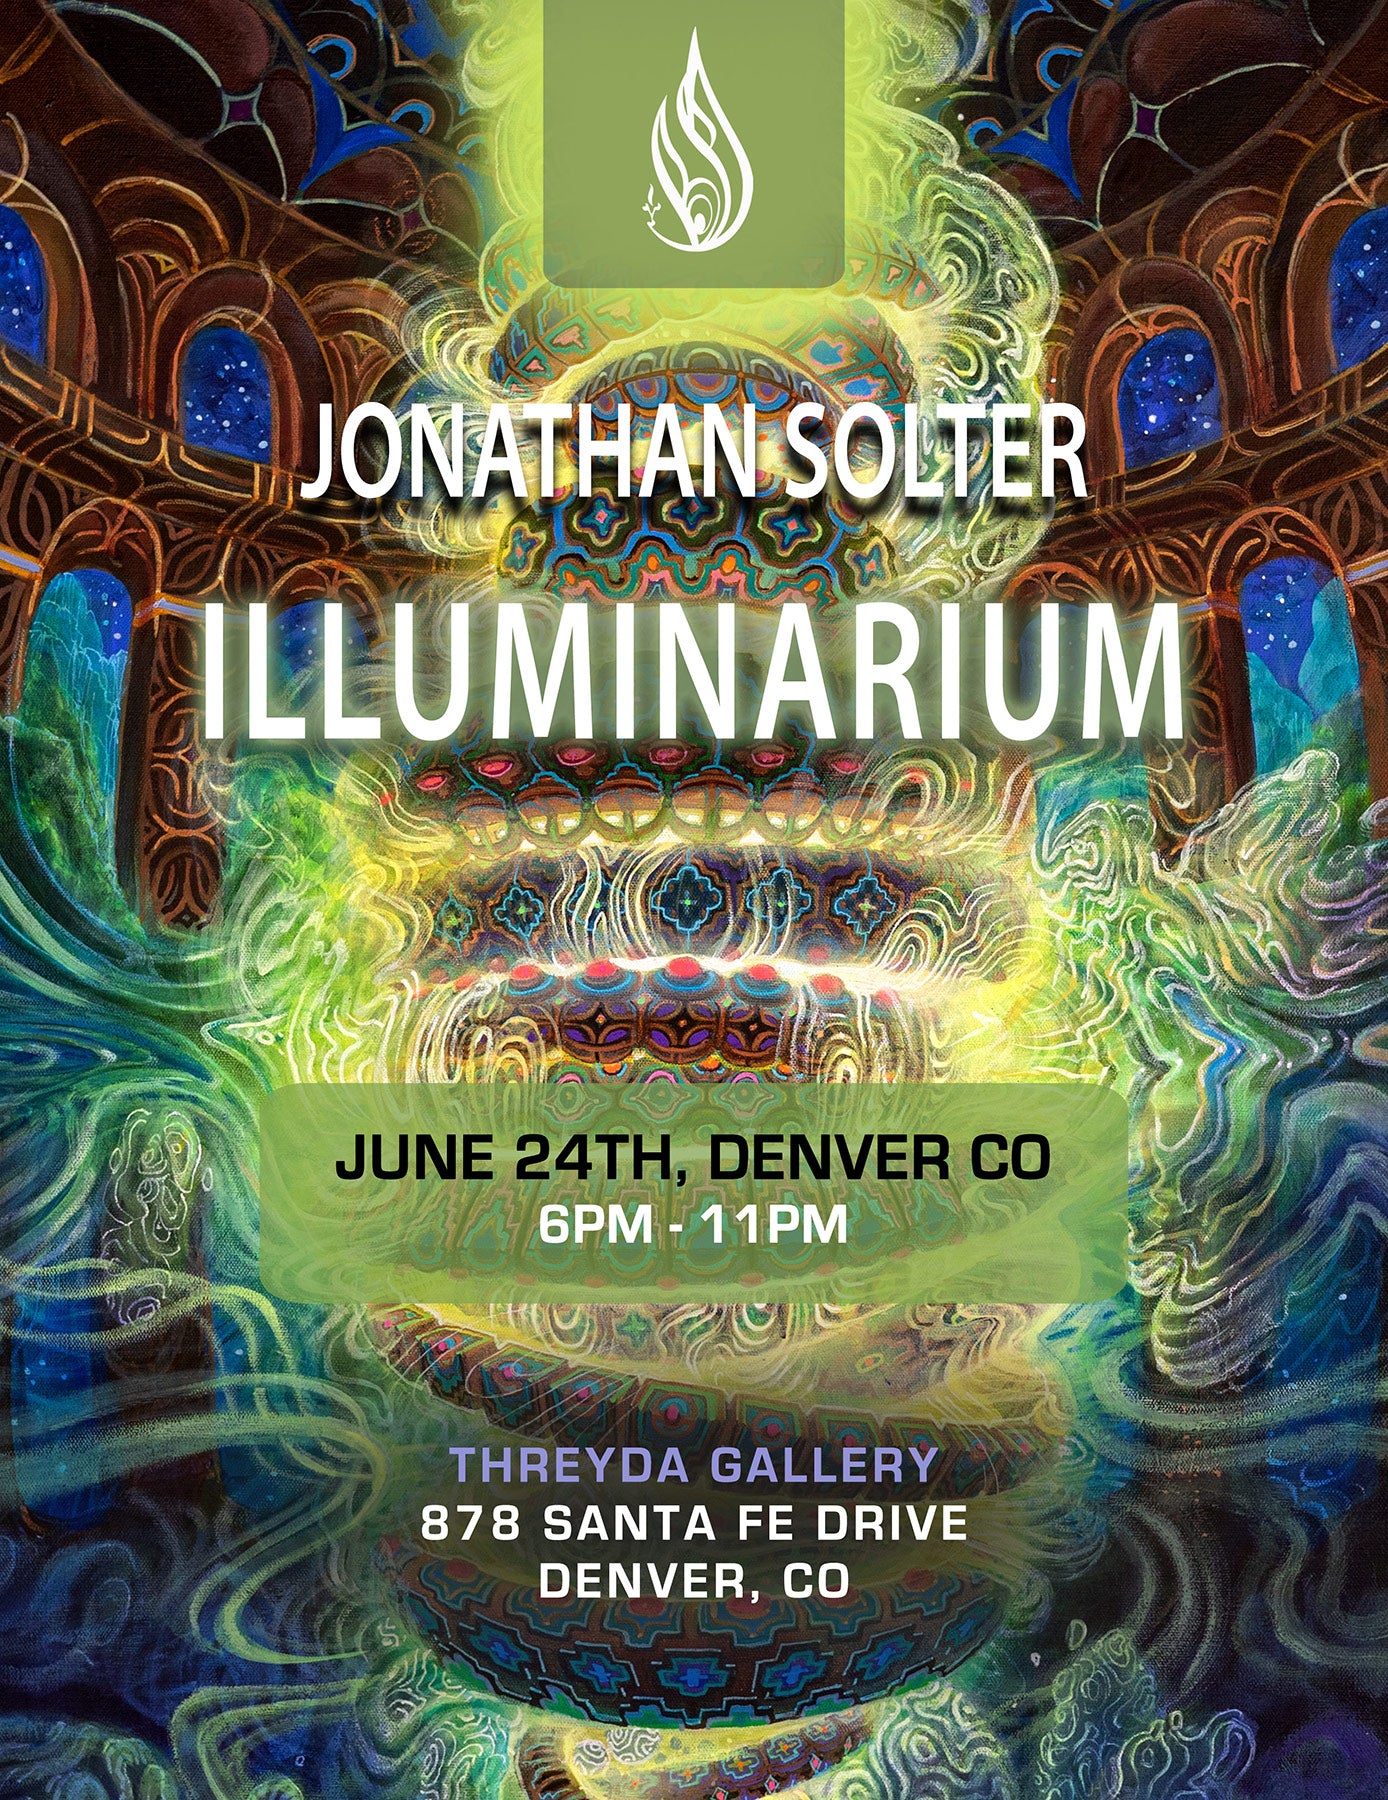 ILLUMINARIUM Event Ticket - June 24th, Denver CO